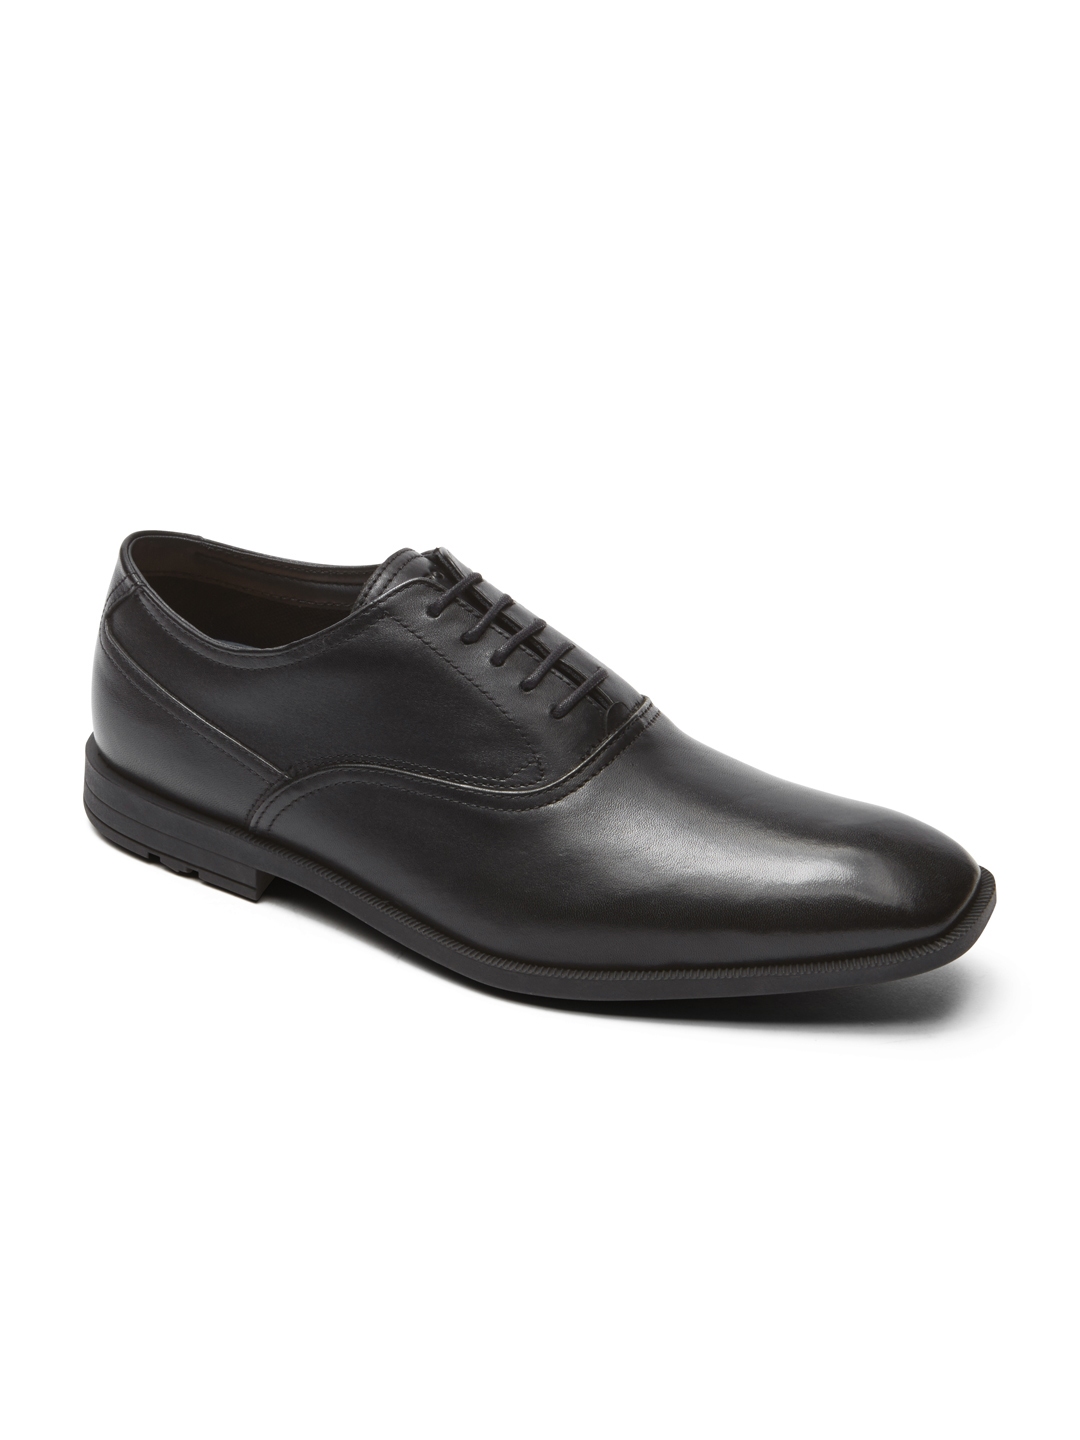 Buy Rockport Men Black Leather Formal Shoes - Formal Shoes for Men ...